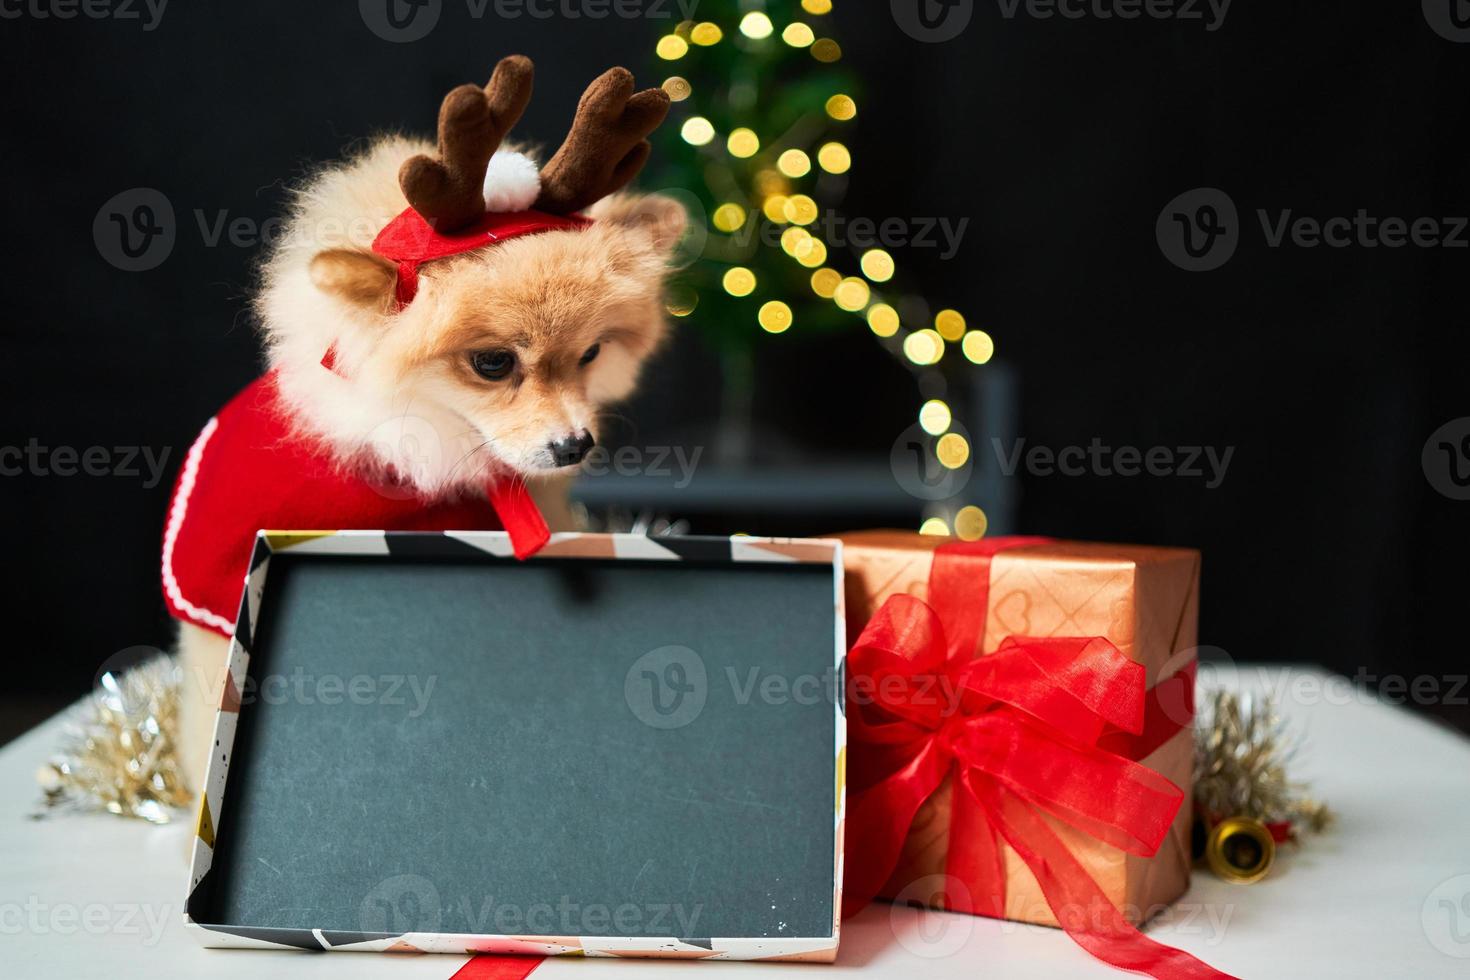 pluizige hond pomeranian met een rand van een hertenhoorn dop in de buurt van de kerstboom en de doos met cadeau. achtergrond van nieuwjaarsdecoraties. huisdier en vakantie foto